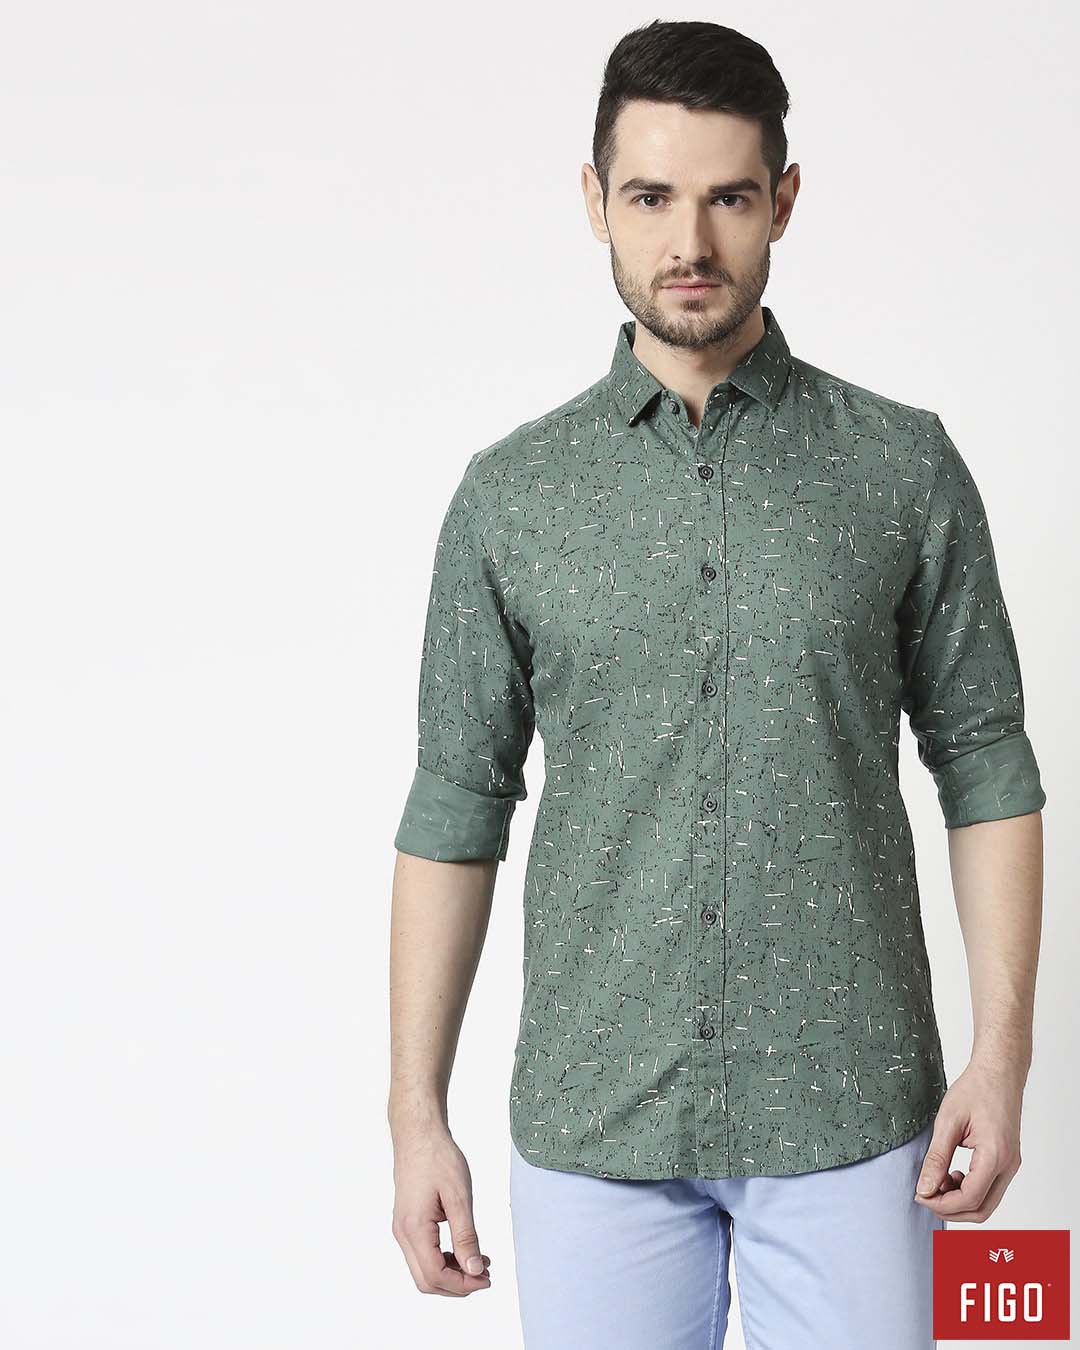 Figo Men's Jumper Green Slim Fit Casual Print Shirt